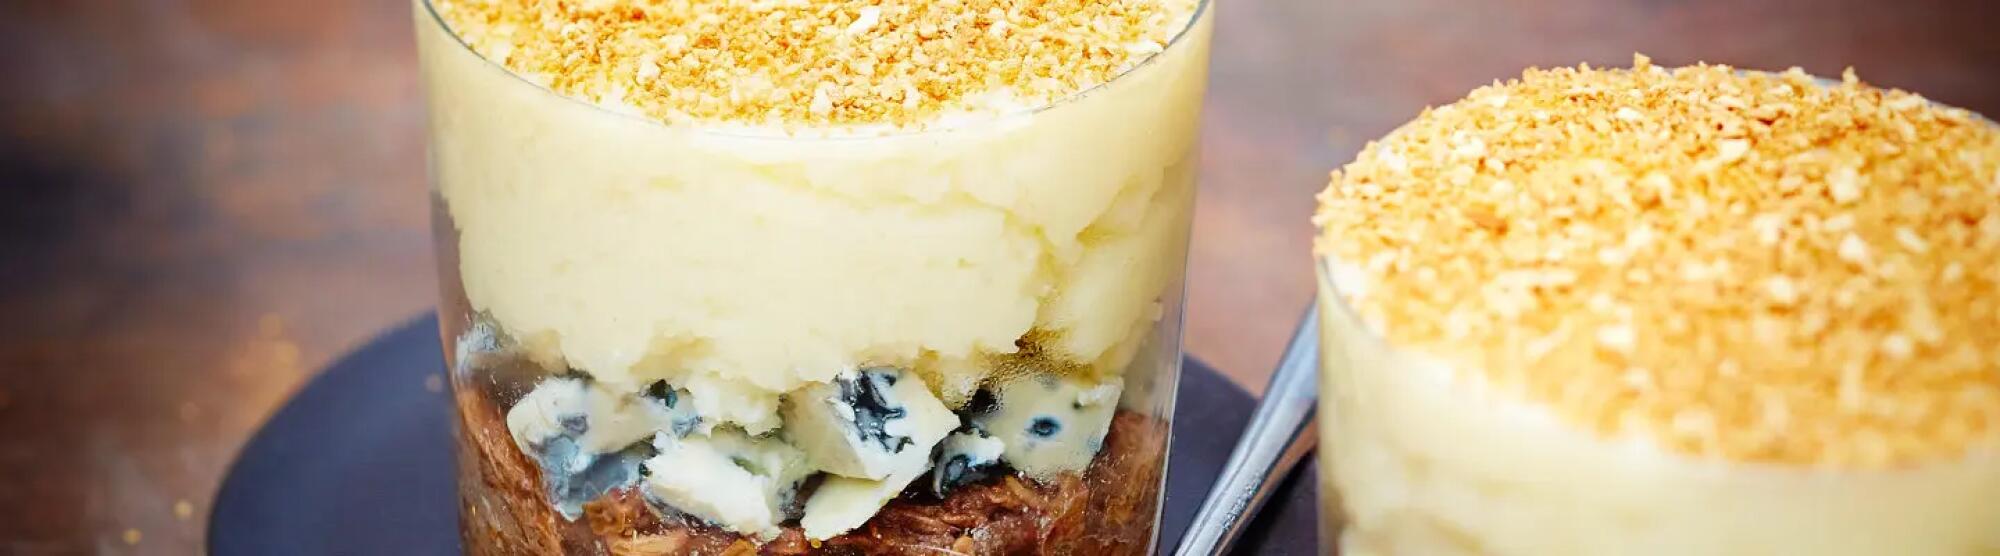 Recette : Hachis parmentier au fromage bleu